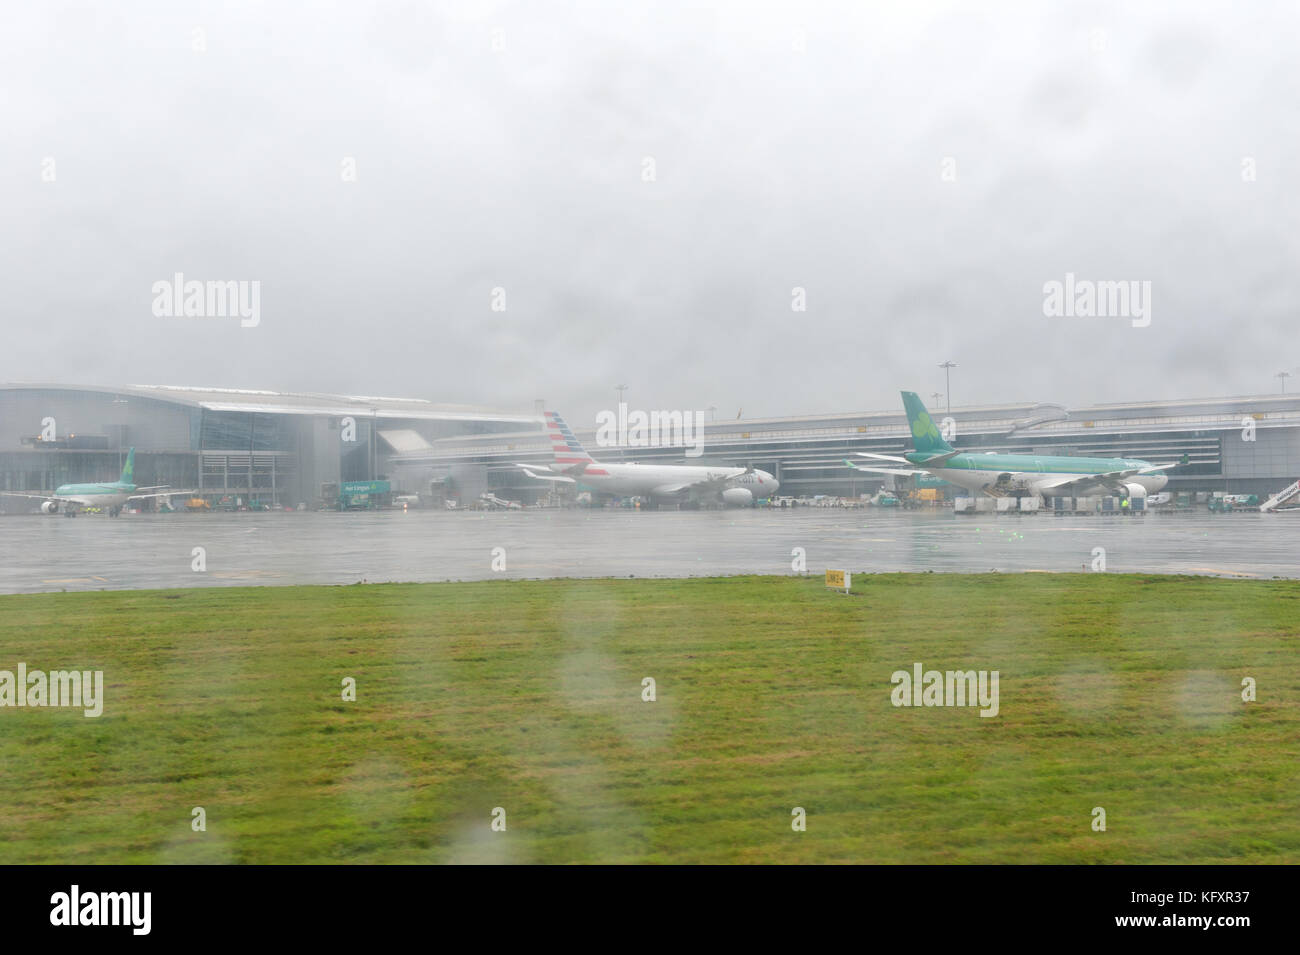 Dublin, Irlande - 27 septembre, 2017 : Aer Lingus avions alignés au Terminal 2 de l''aéroport de Dublin, Irlande Banque D'Images